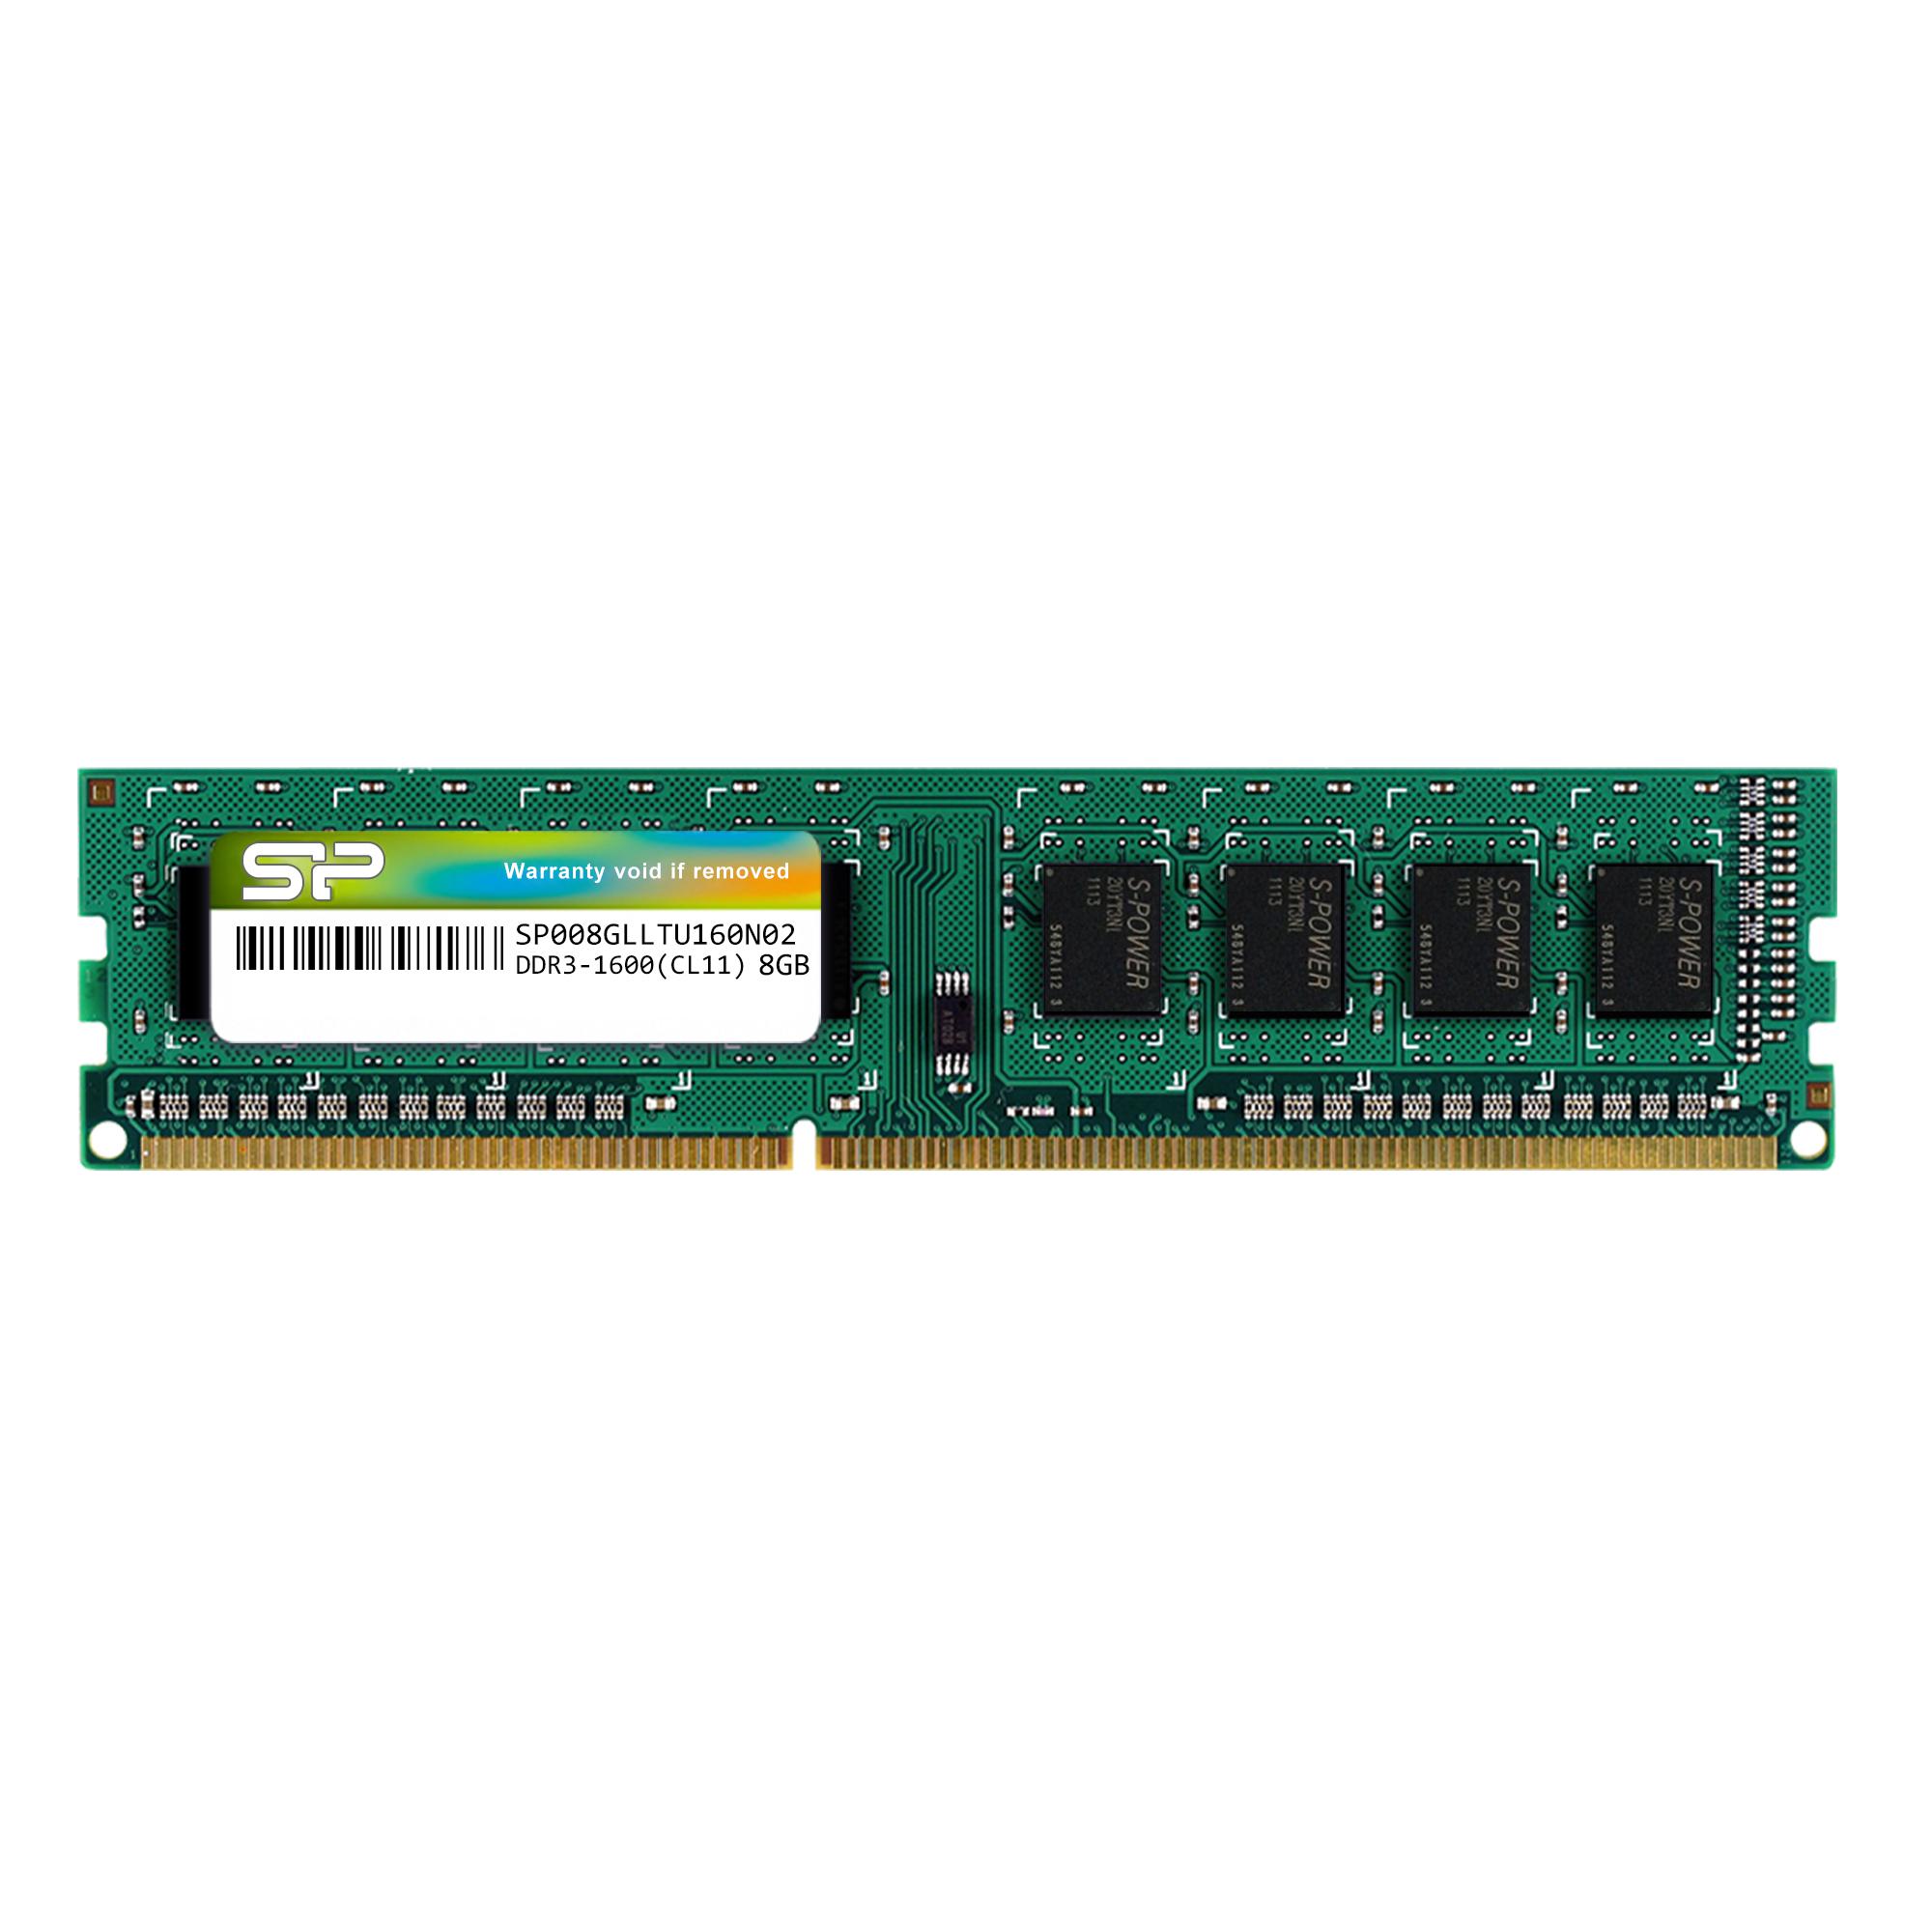 RAM Silicon Power SP008GLLTU160N02 8GB (1x8) DDR3-1600 CL11 (SP008GLLTU160N02) slide image 0